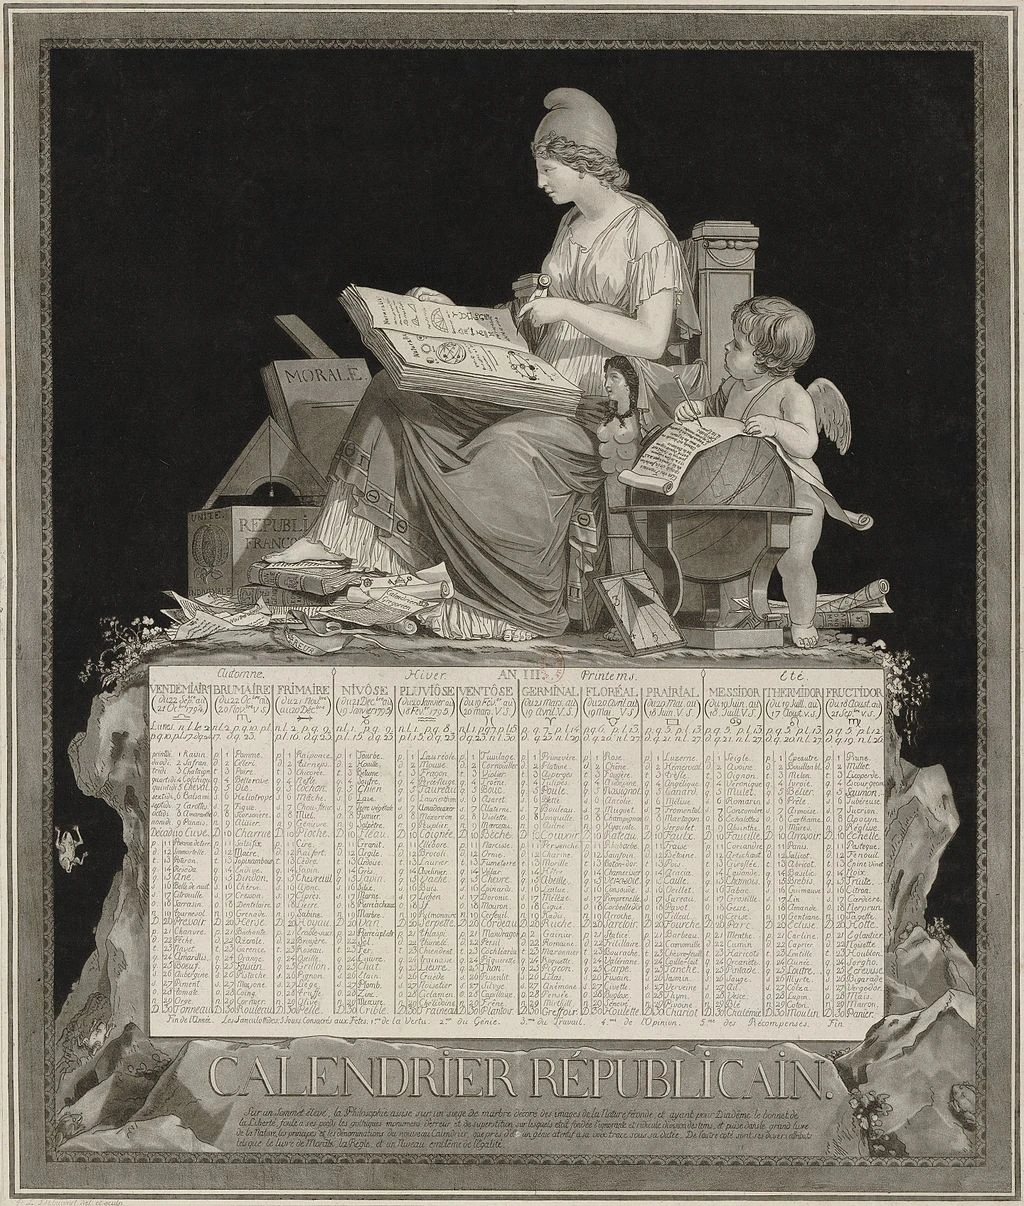 Le calendrier républicain de l'AN III (1795) par Louis Philibert Debucourt via Wikimedia Commons